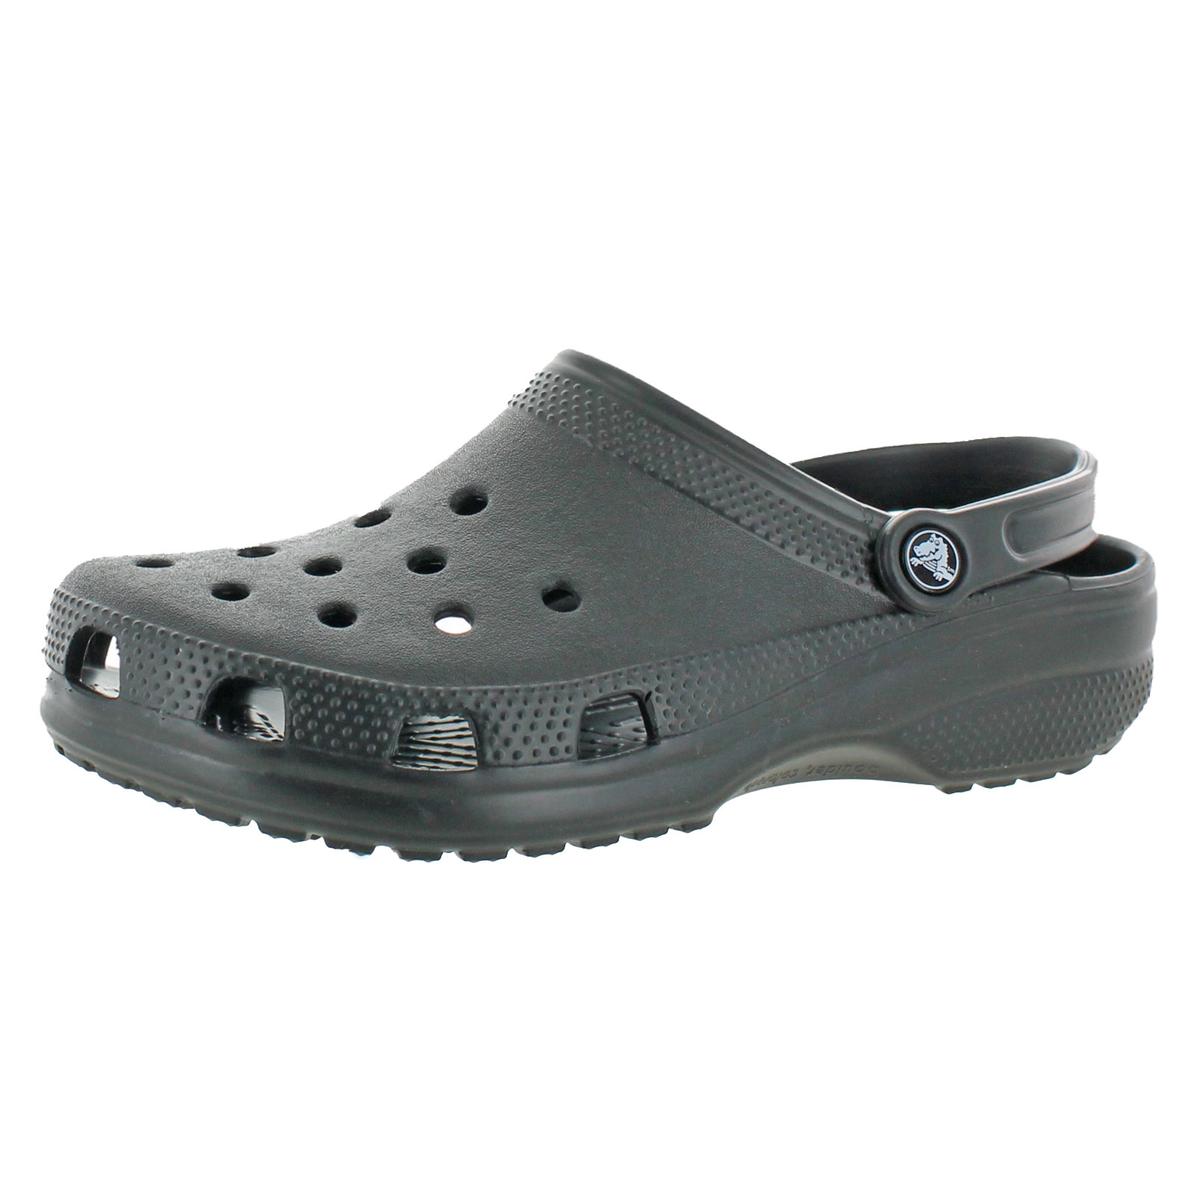  Crocs  Adult Size Unisex Classic Croslite Clog Shoes  